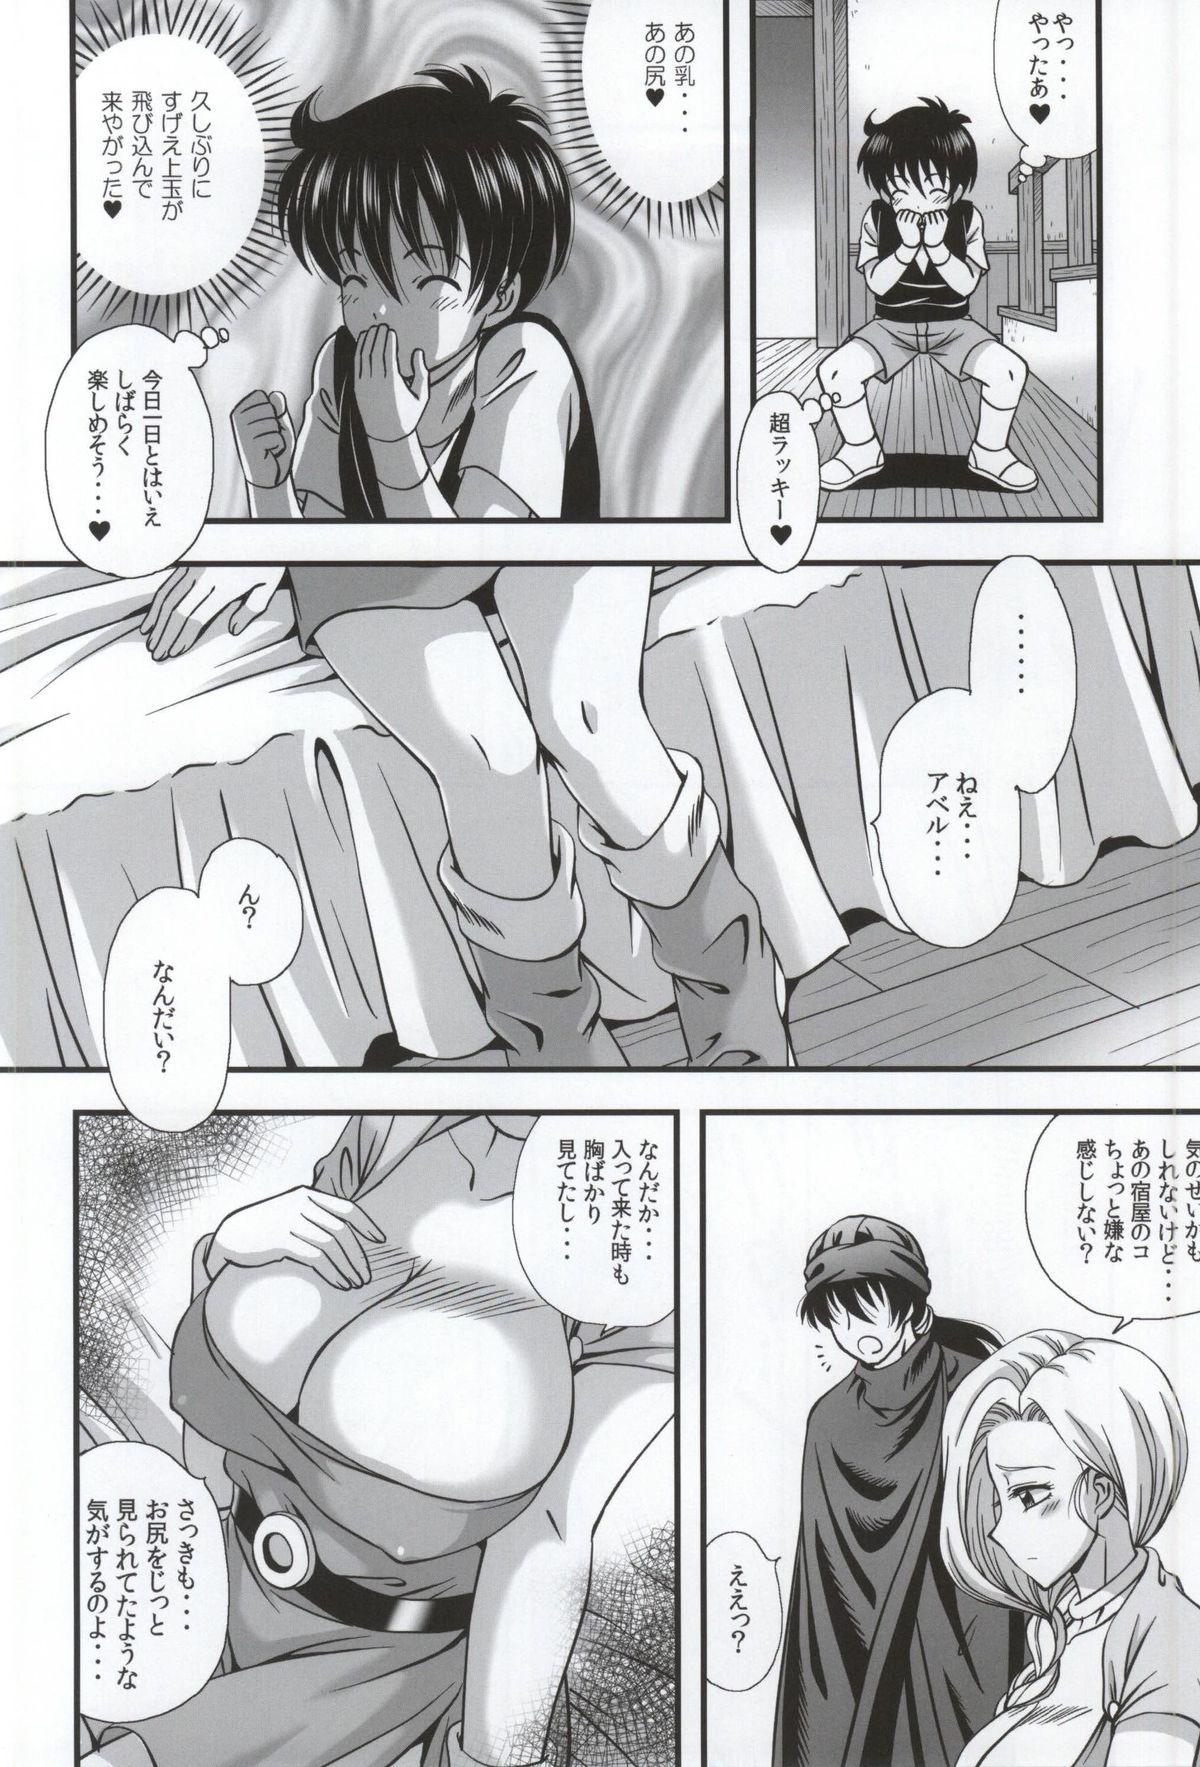 Bj Bianca to Masegaki - Dragon quest v Private - Page 5